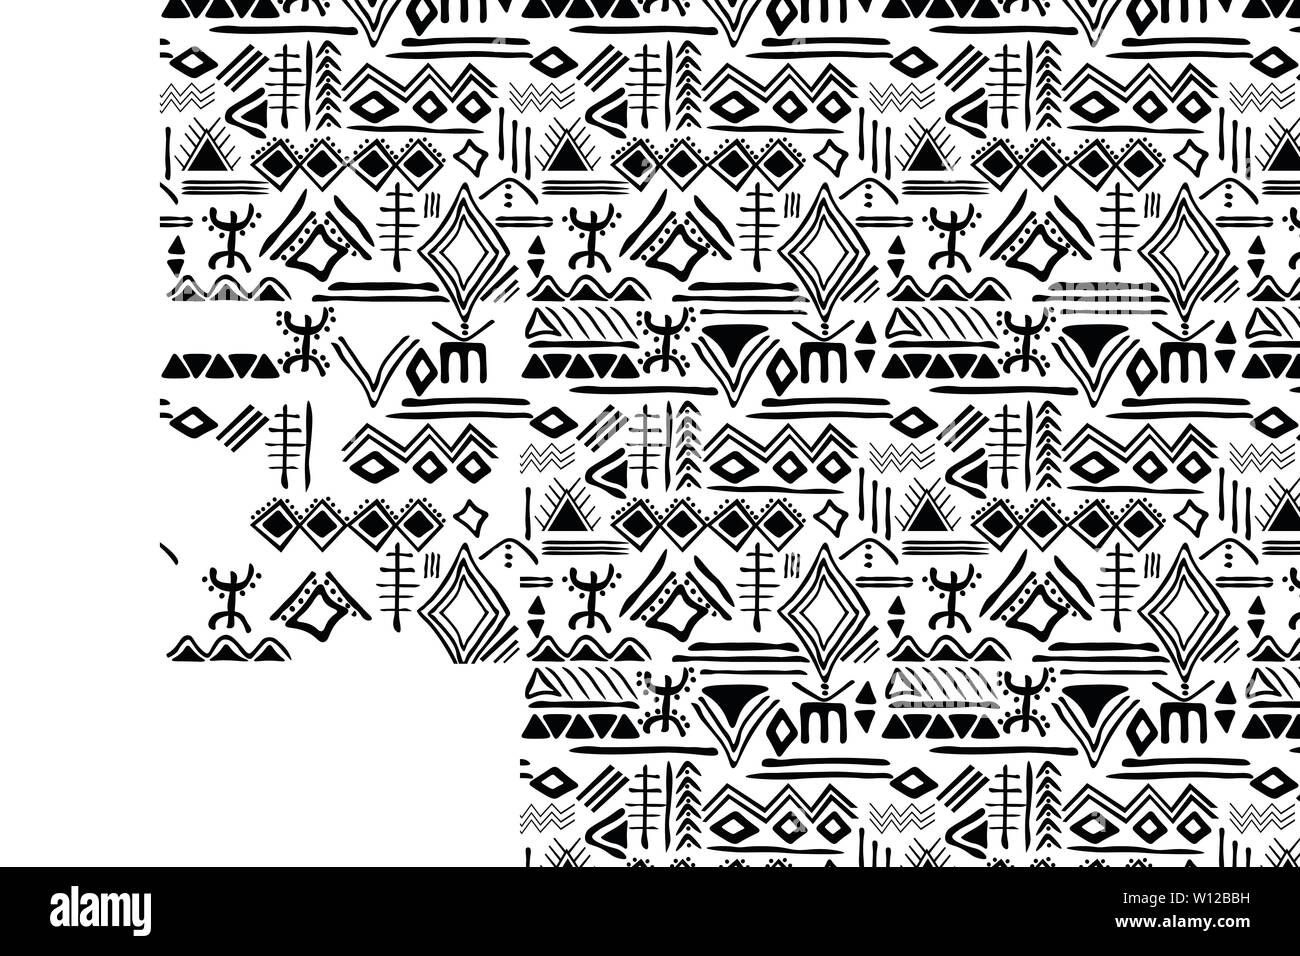 Transparente avec motif tribal ornement géométrique archaïque. Style ethnique primitif dessiné à la main avec des frontières sans fin. Palette de couleurs coloré heureux Illustration de Vecteur